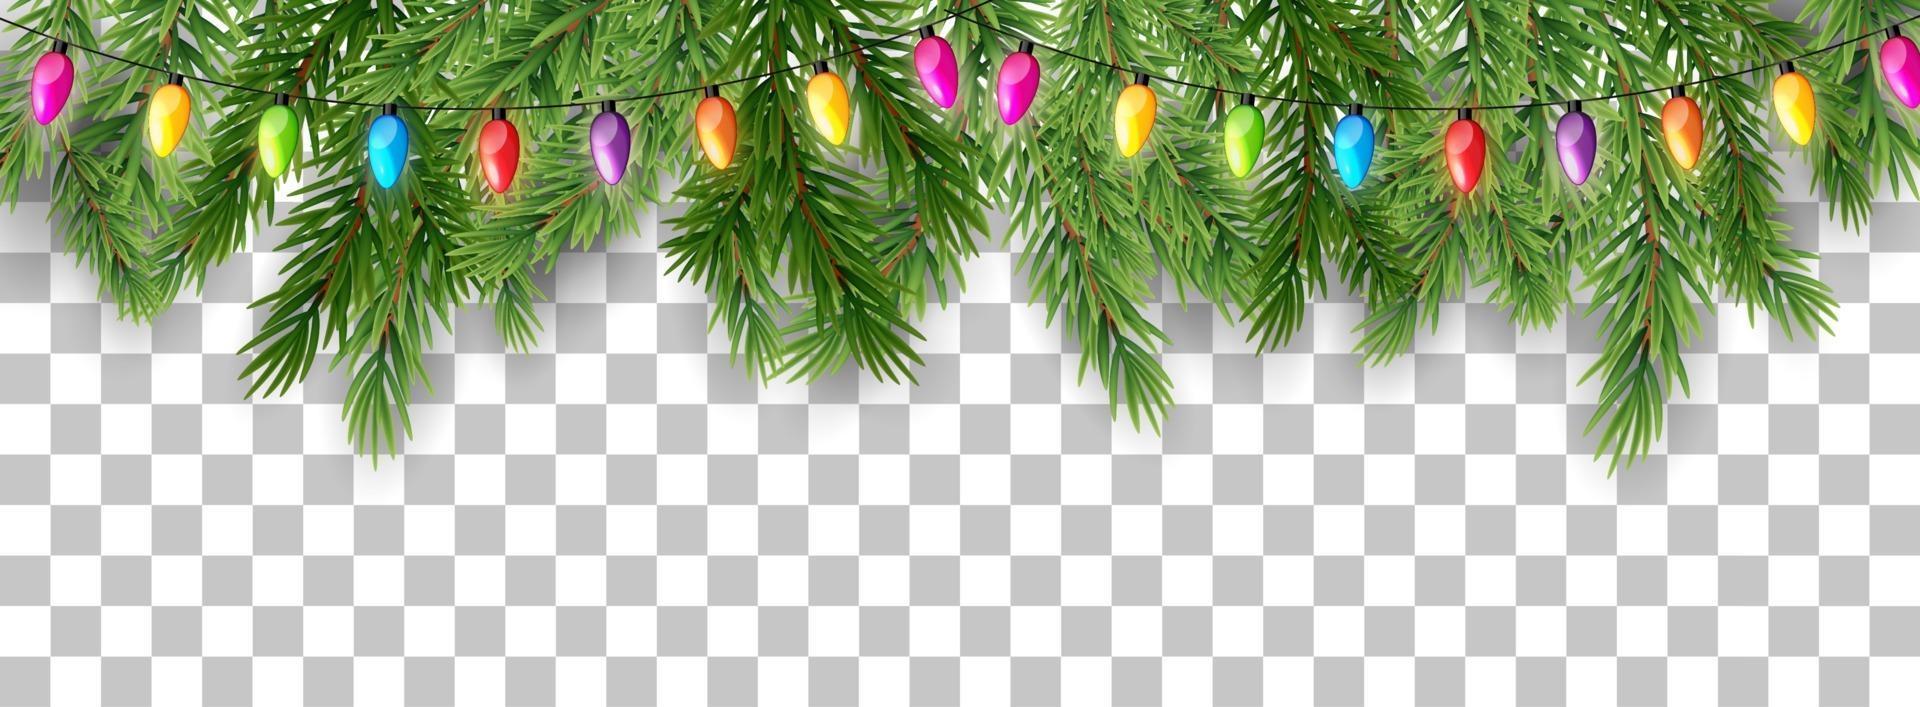 joyeux noël et bonne année bordure de branches d'arbres et de perles de guirlande sur fond transparent. illustration vectorielle vecteur